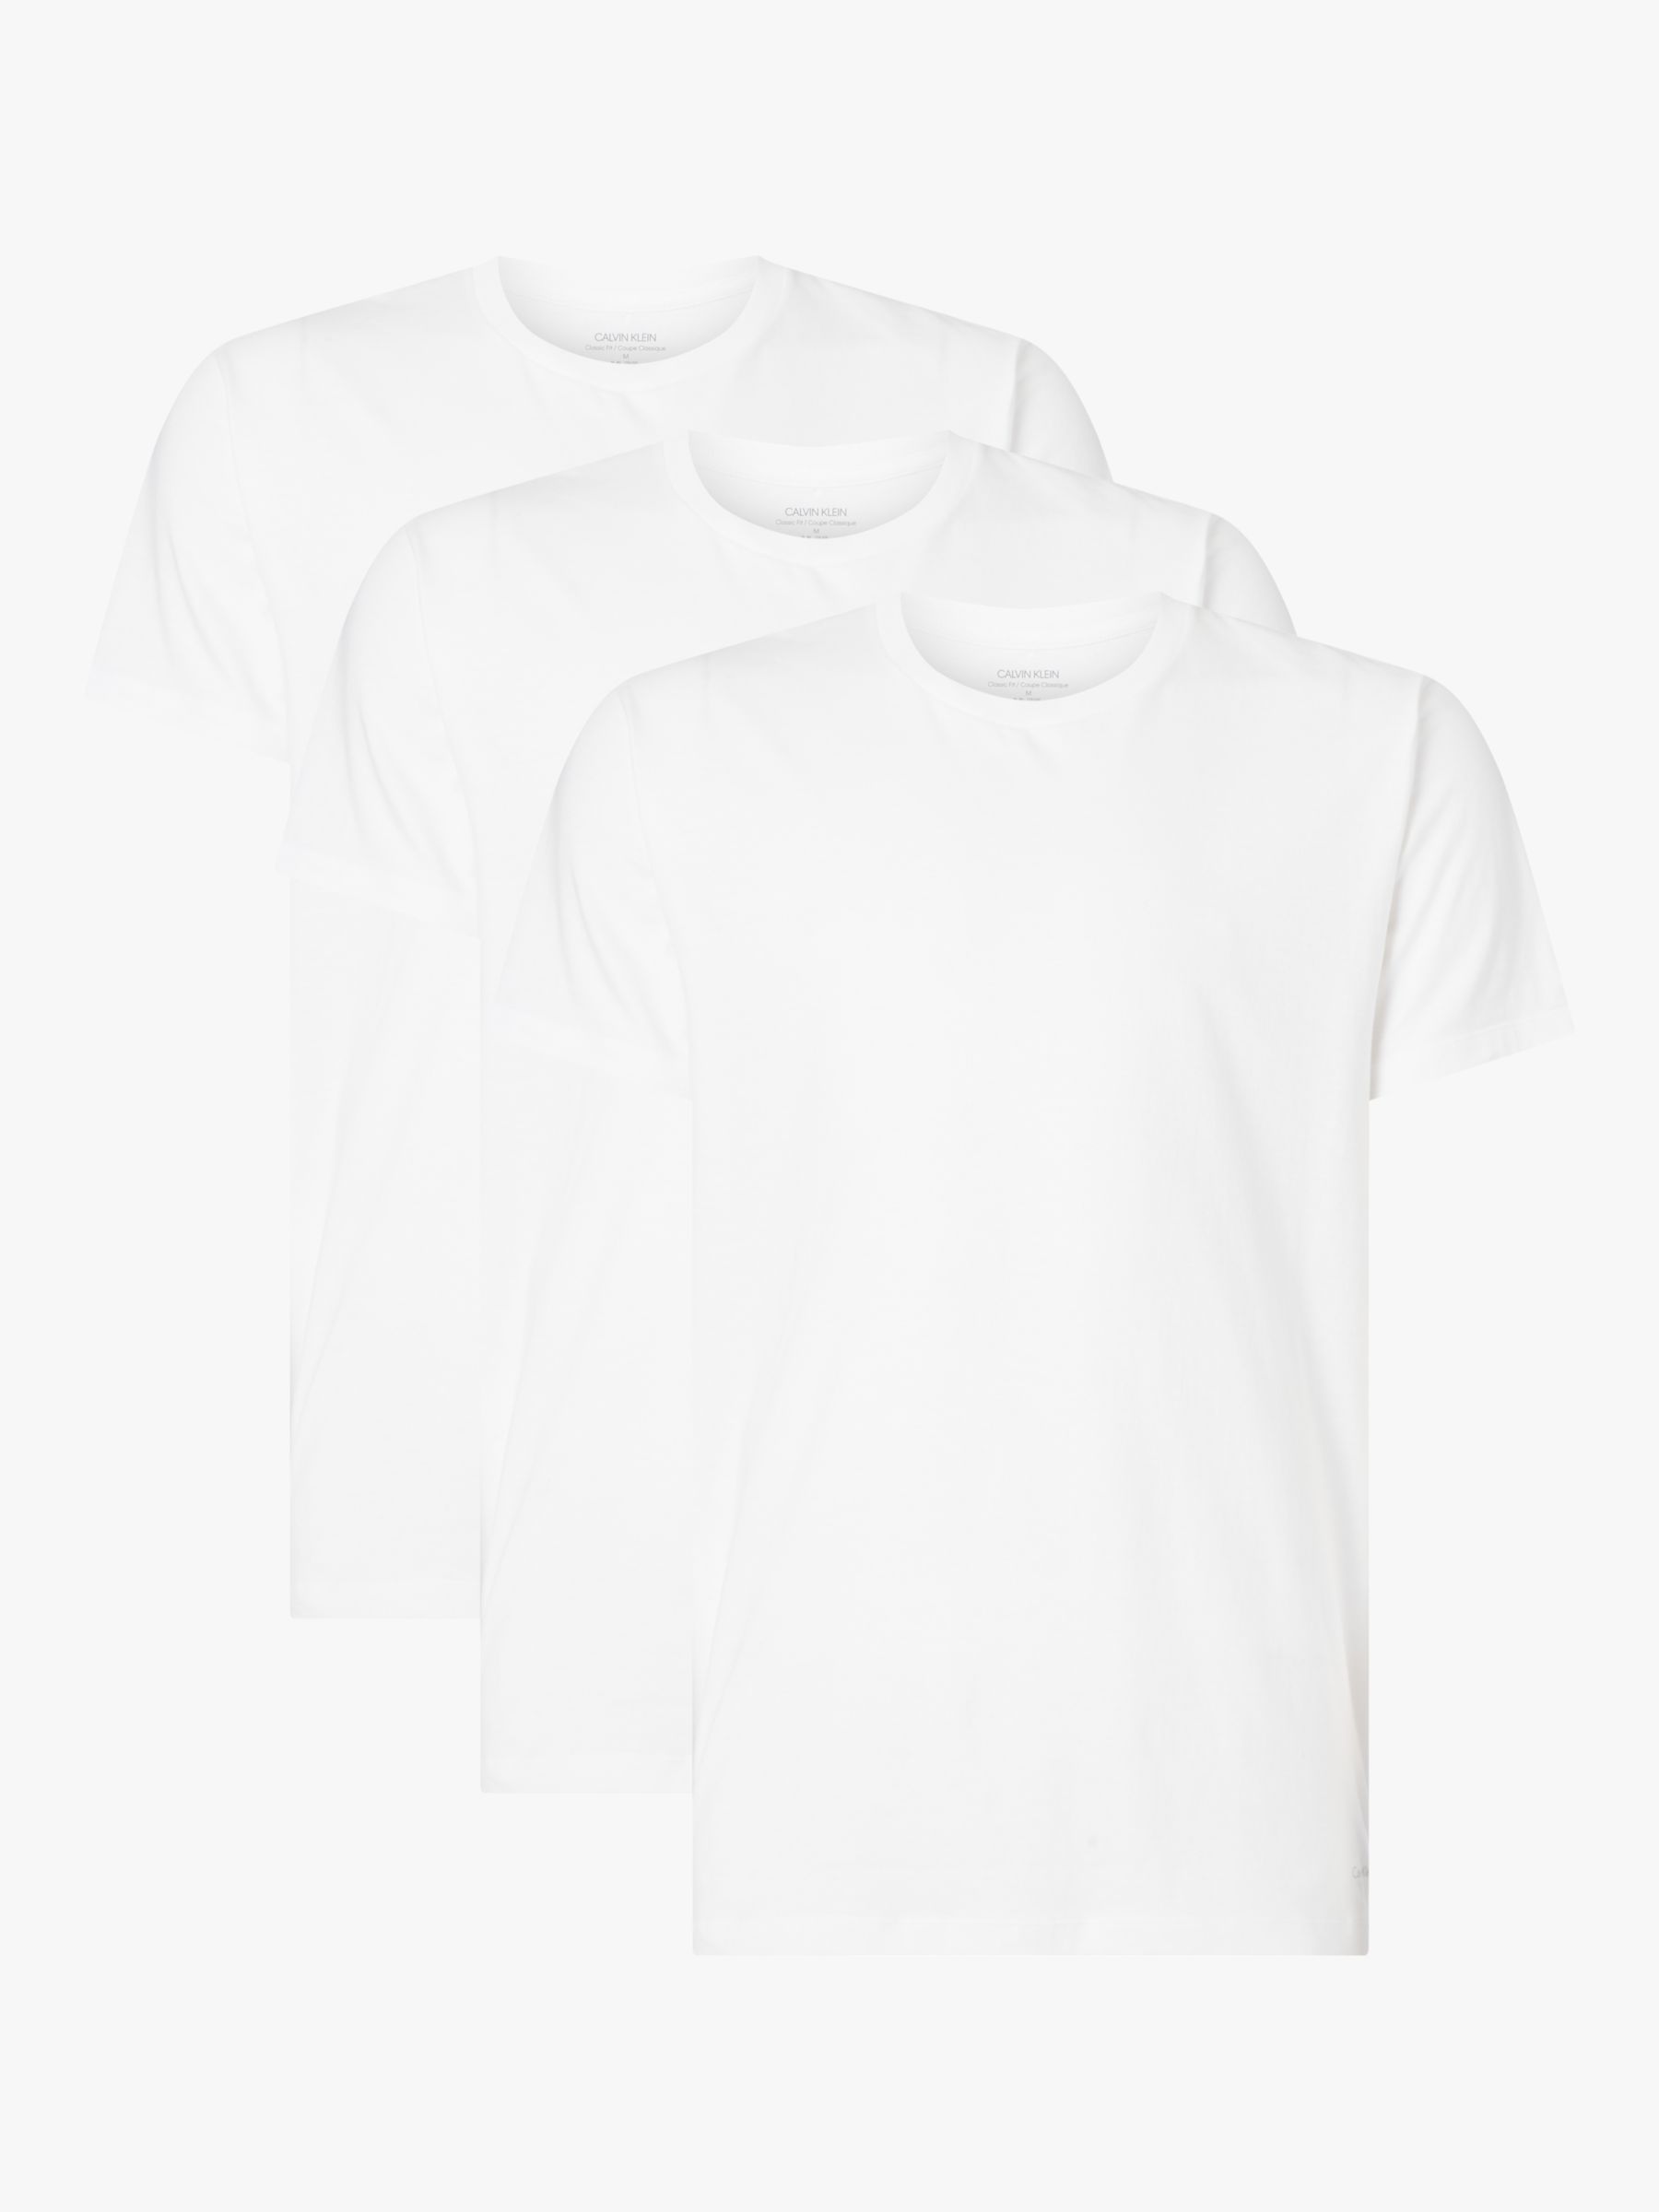 Calvin Klein Pure Cotton Plain Lounge Top, Set of 3, White, S